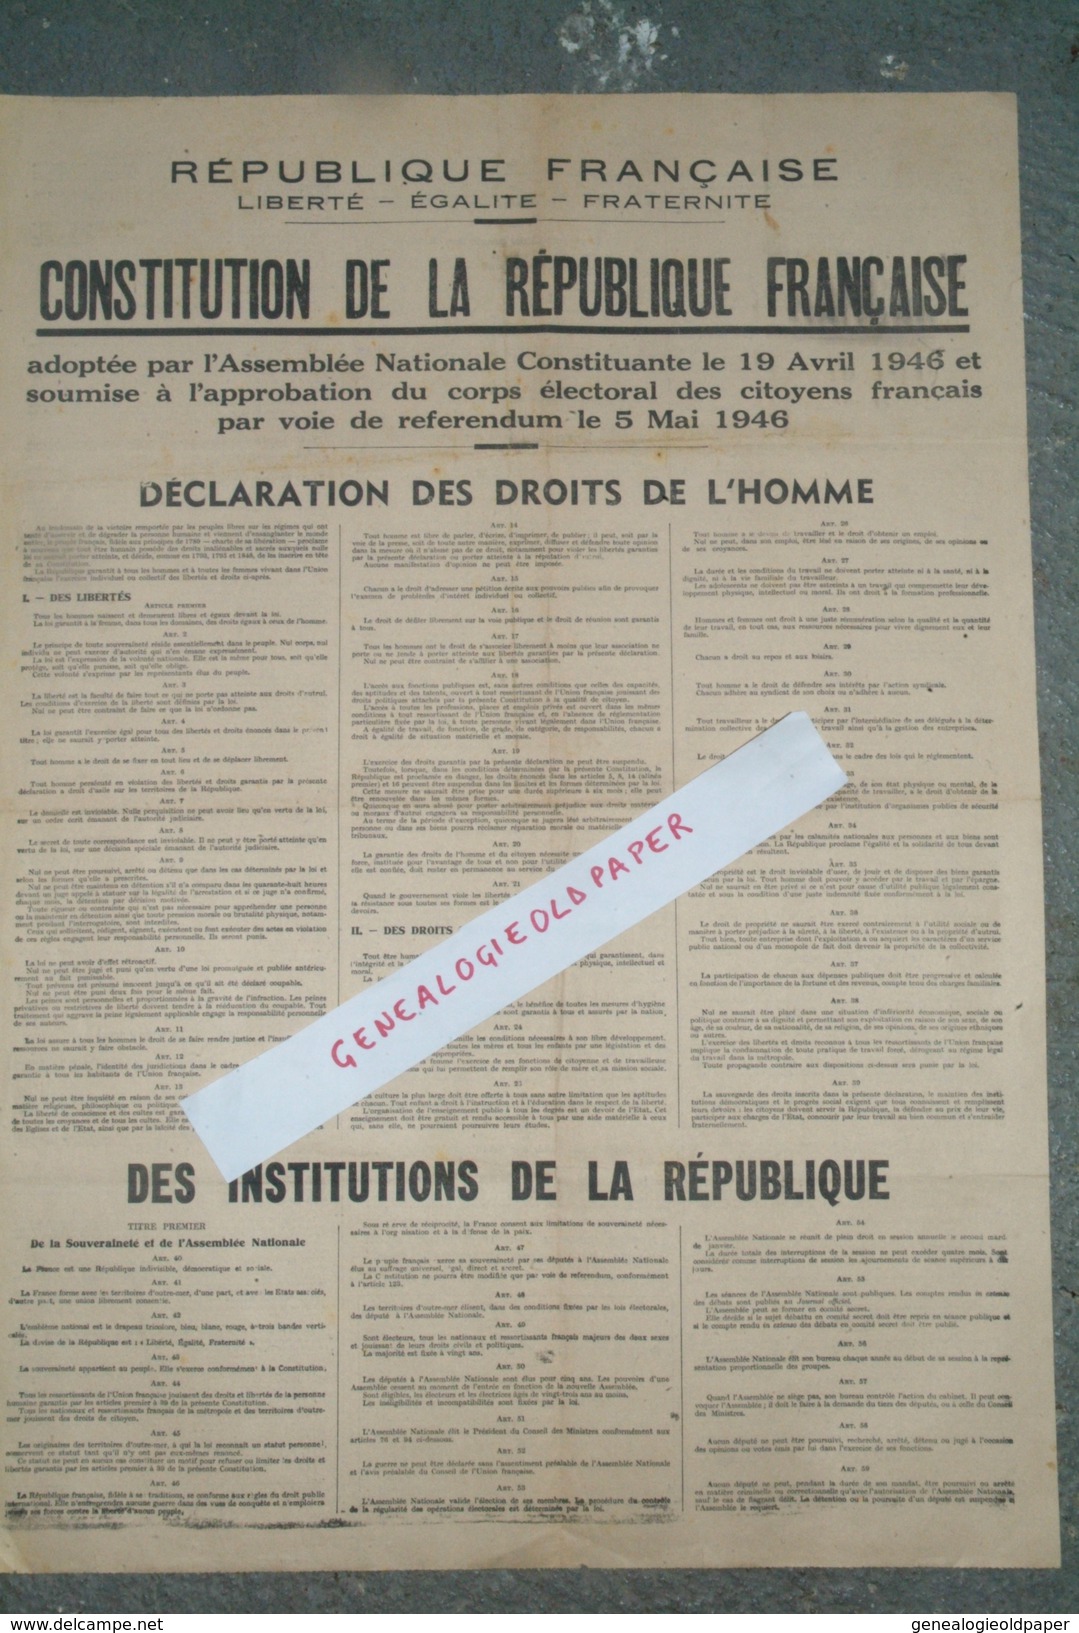 POLITIQUE - AFFICHE CONSTITUTION REPUBLIQUE FRANCAISE -ASSEMBLEE NATIONALE 19 AVRIL 1946- REFERENDUM 5 MAI 1946-DROITS - Affiches